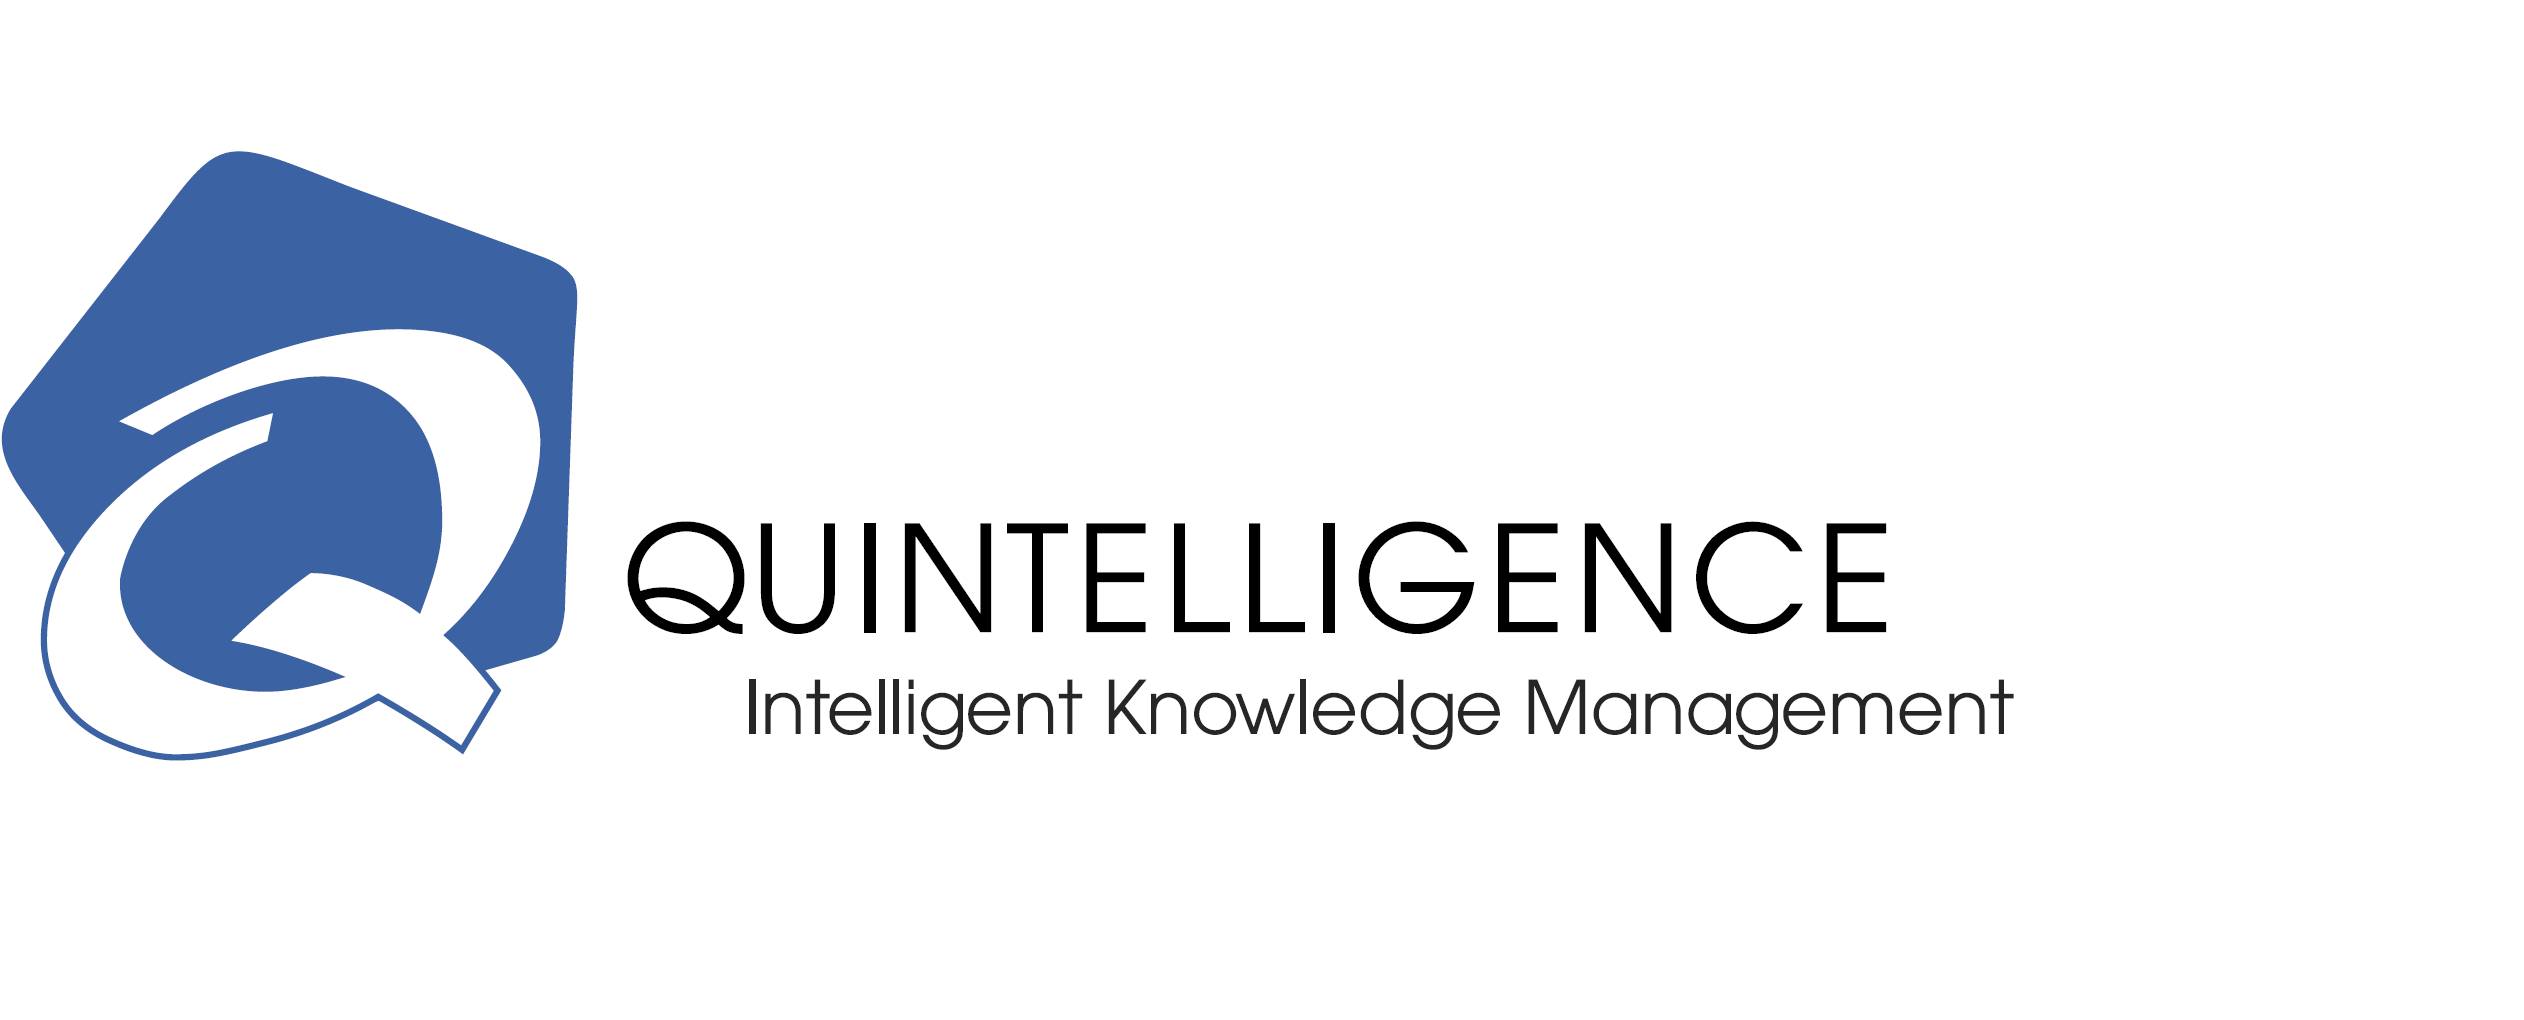 Quintelligence logo new (1)